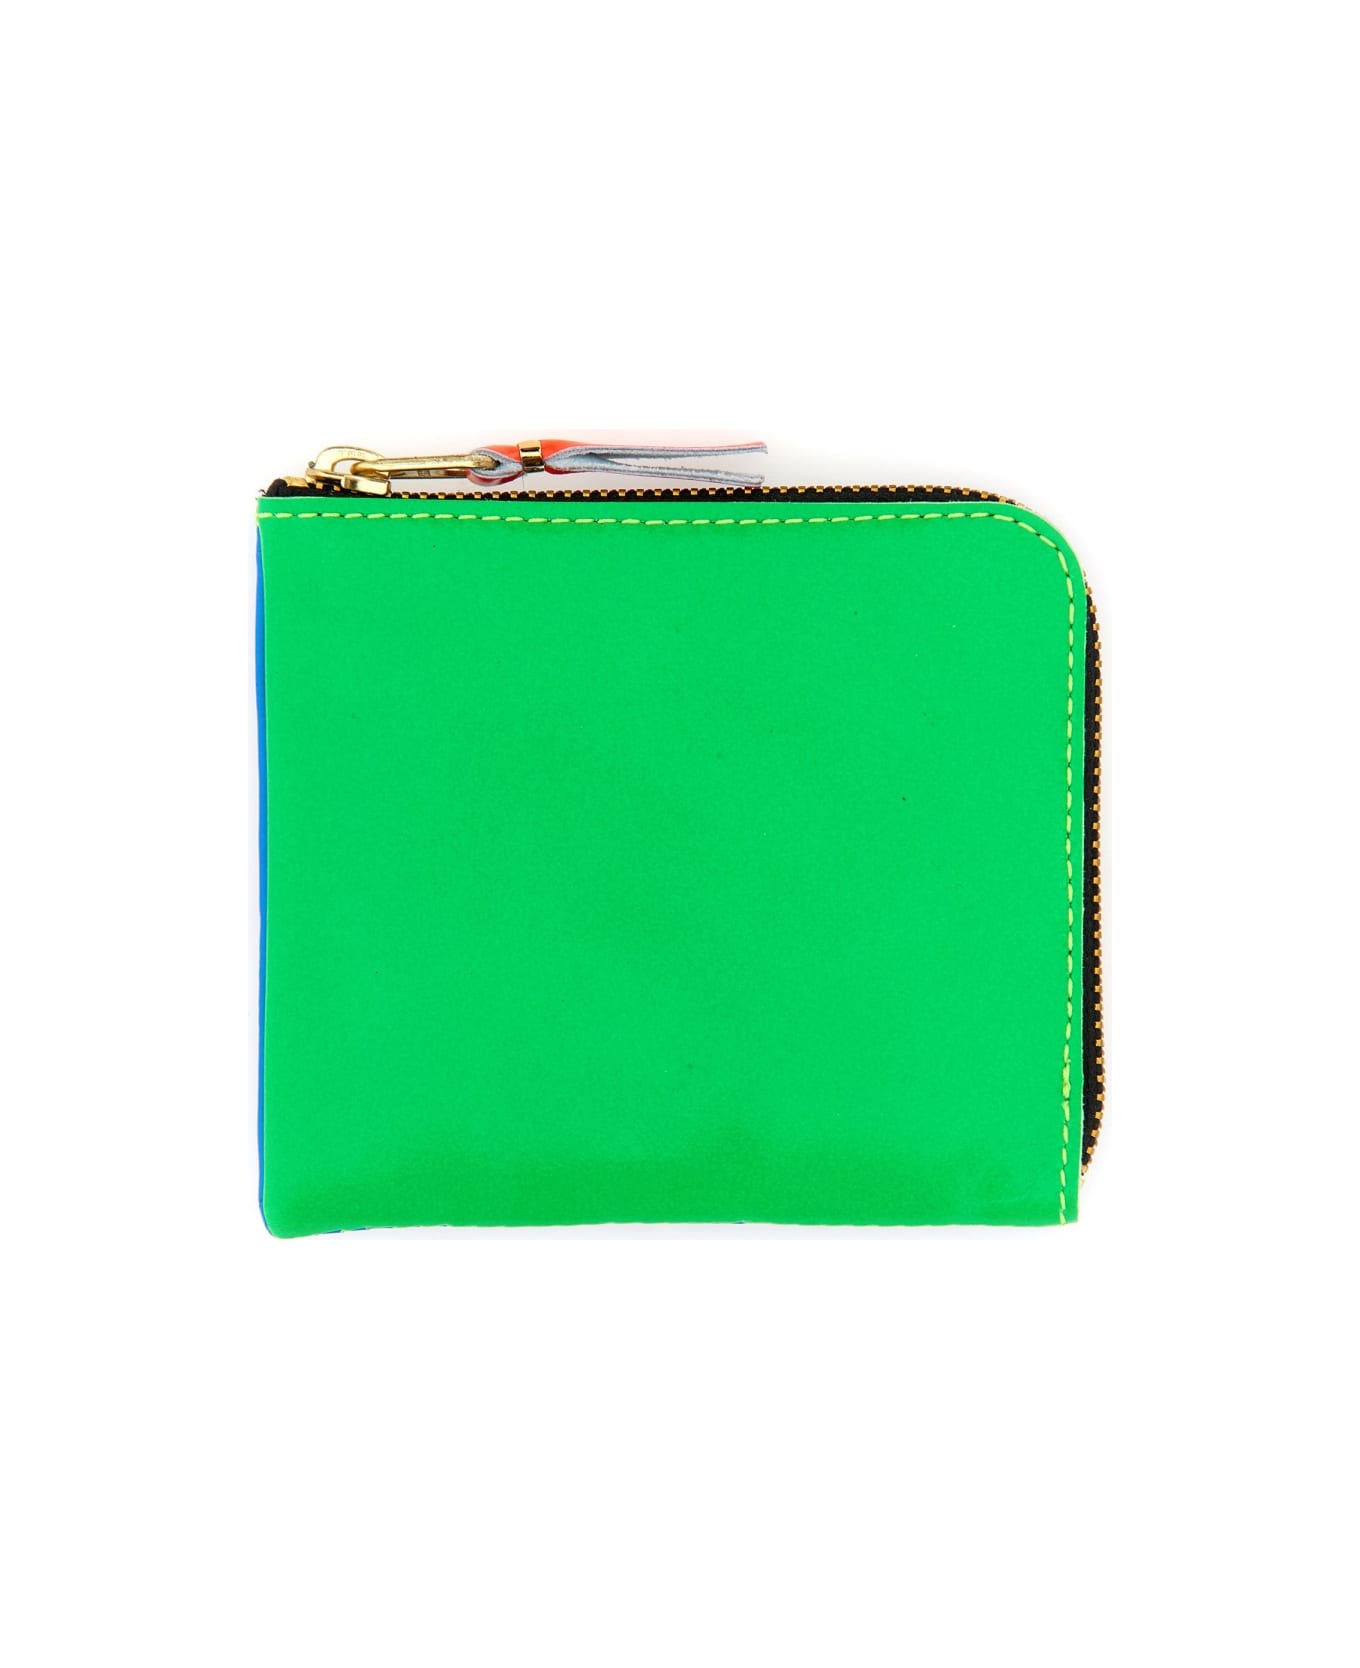 Comme des Garçons Wallet Leather Wallet - GREEN 財布